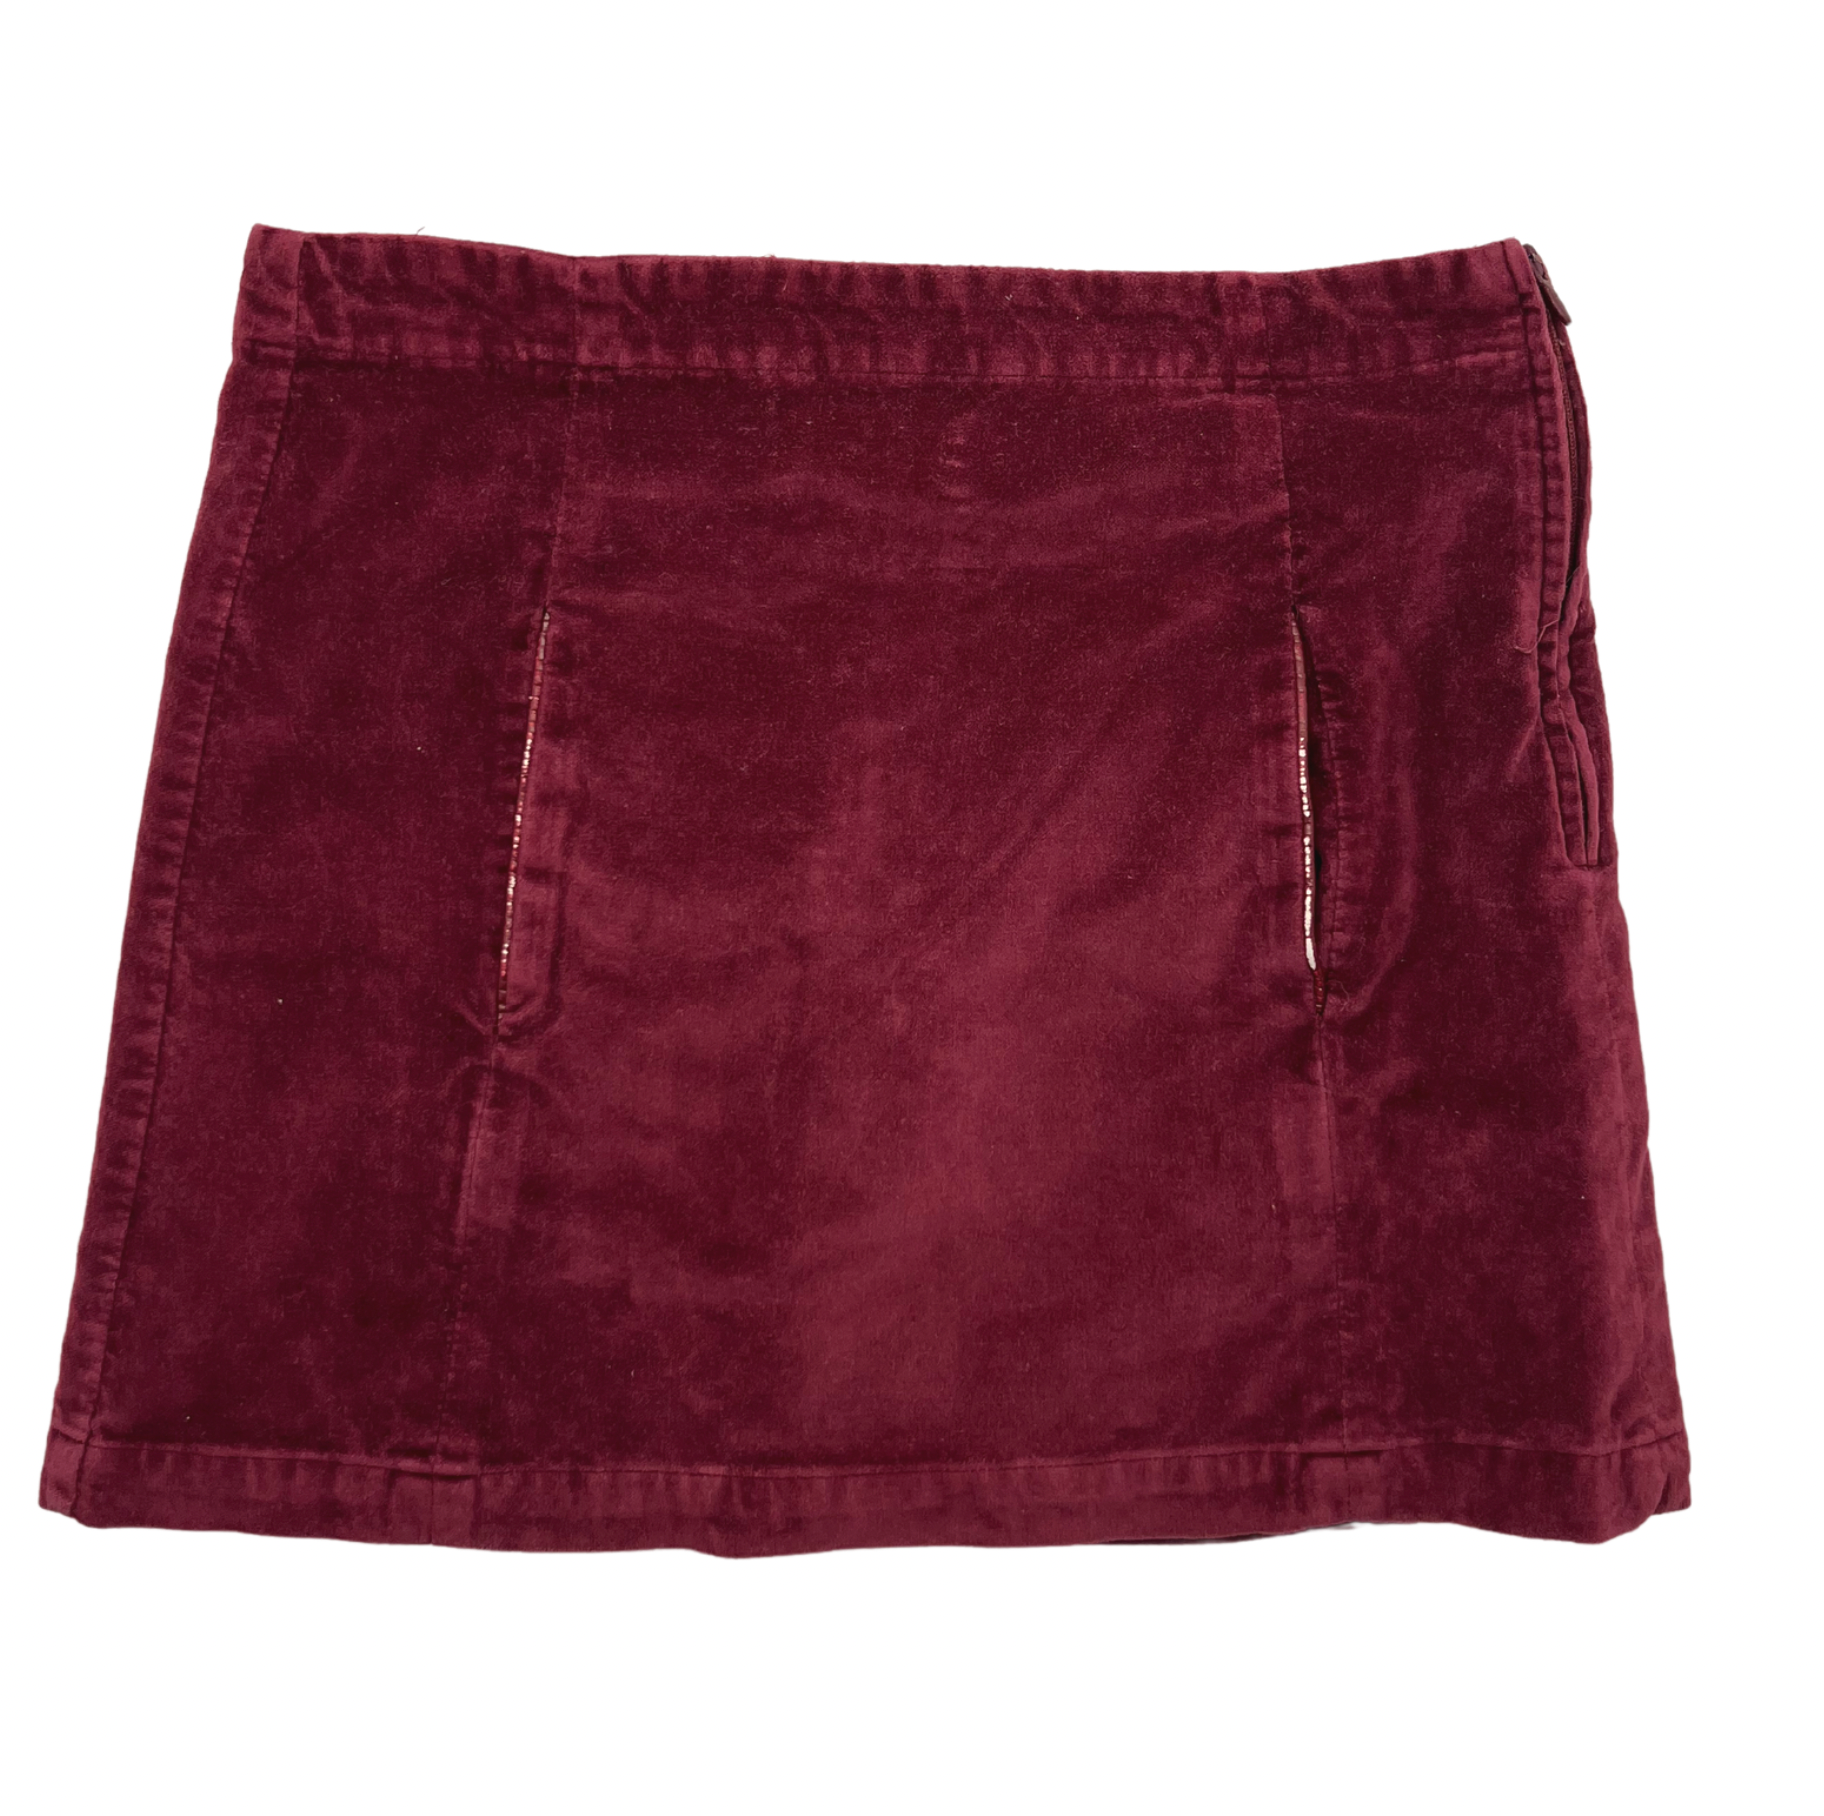 JACADI - Burgundy velvet skirt - 12 years old